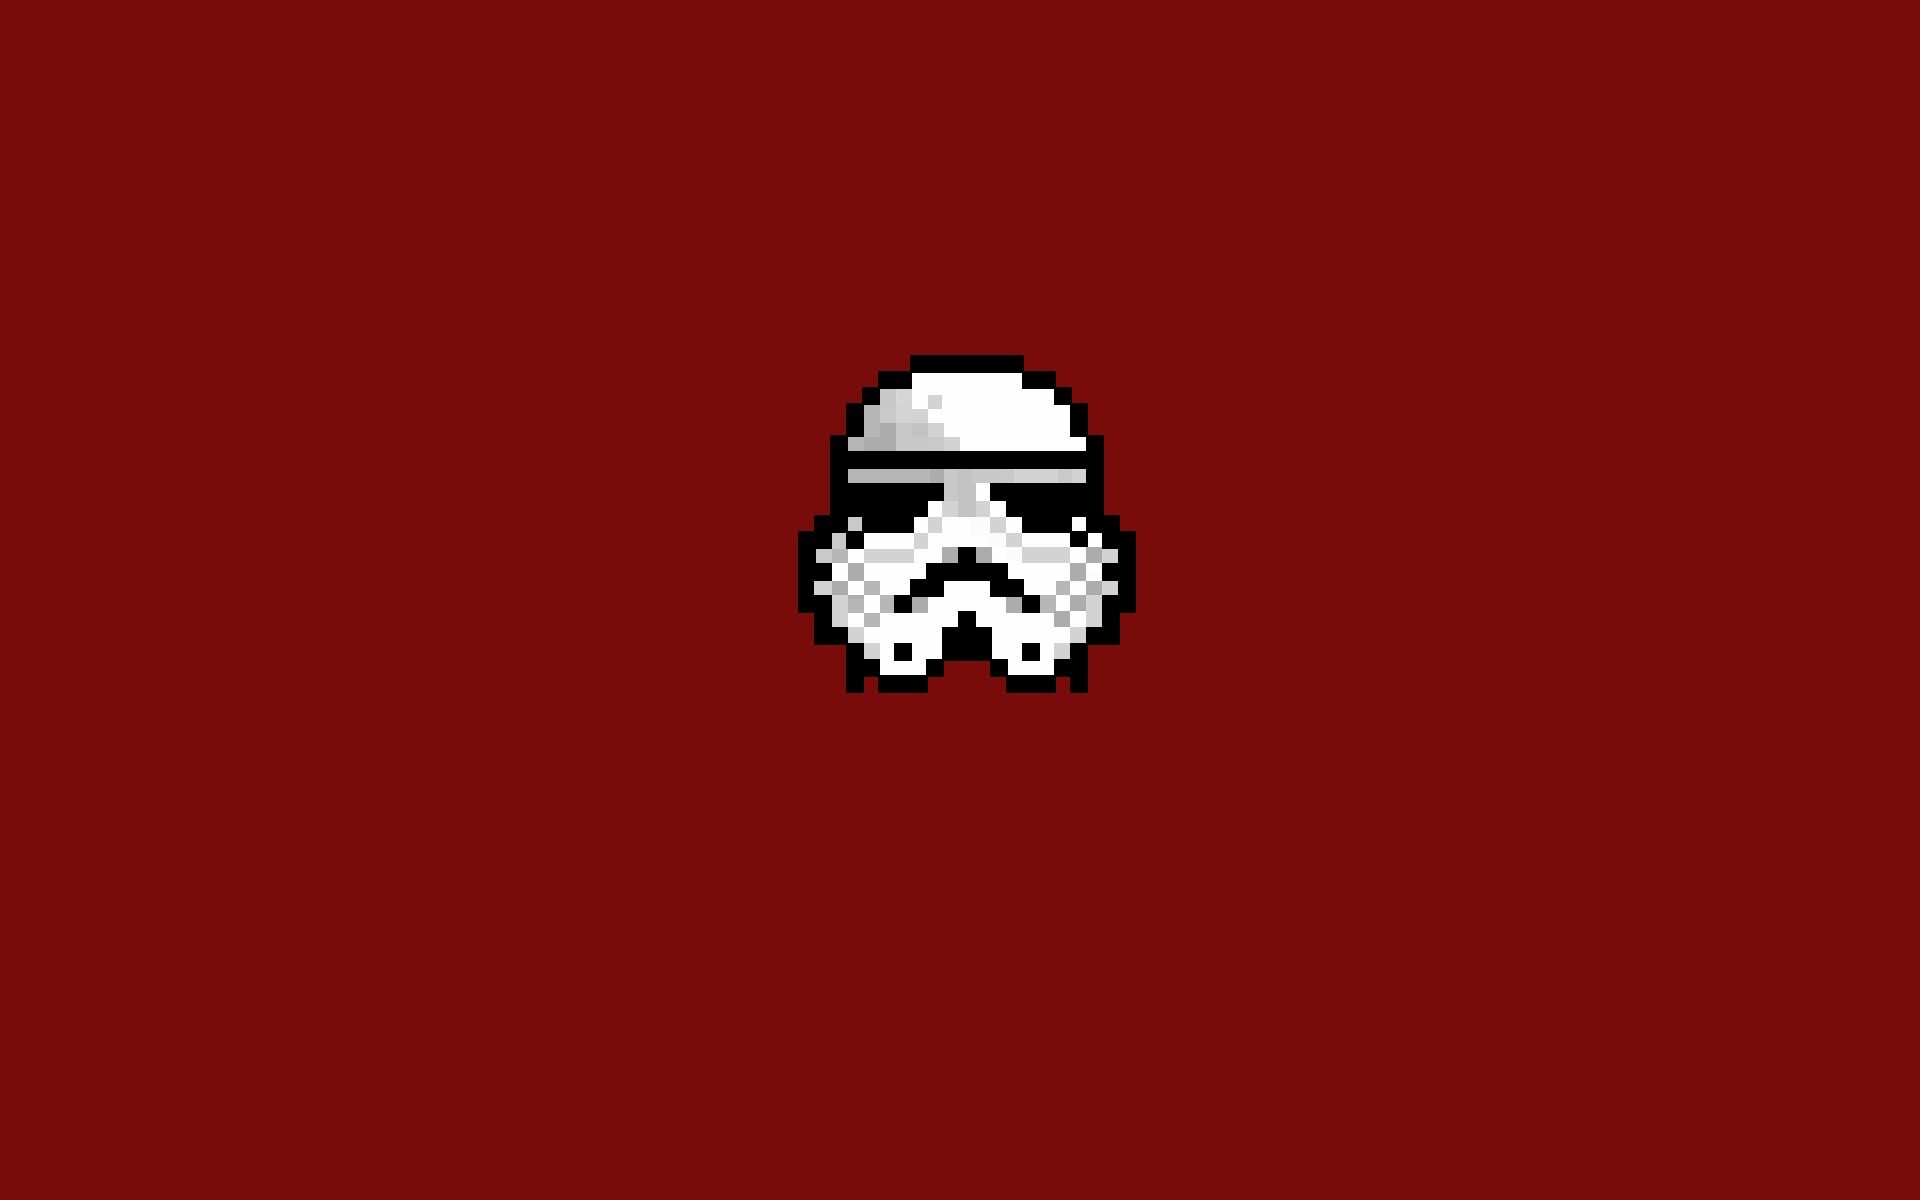 stormtrooper, Star Wars, 8 bit, Pixel Art, Minimalism Wallpaper